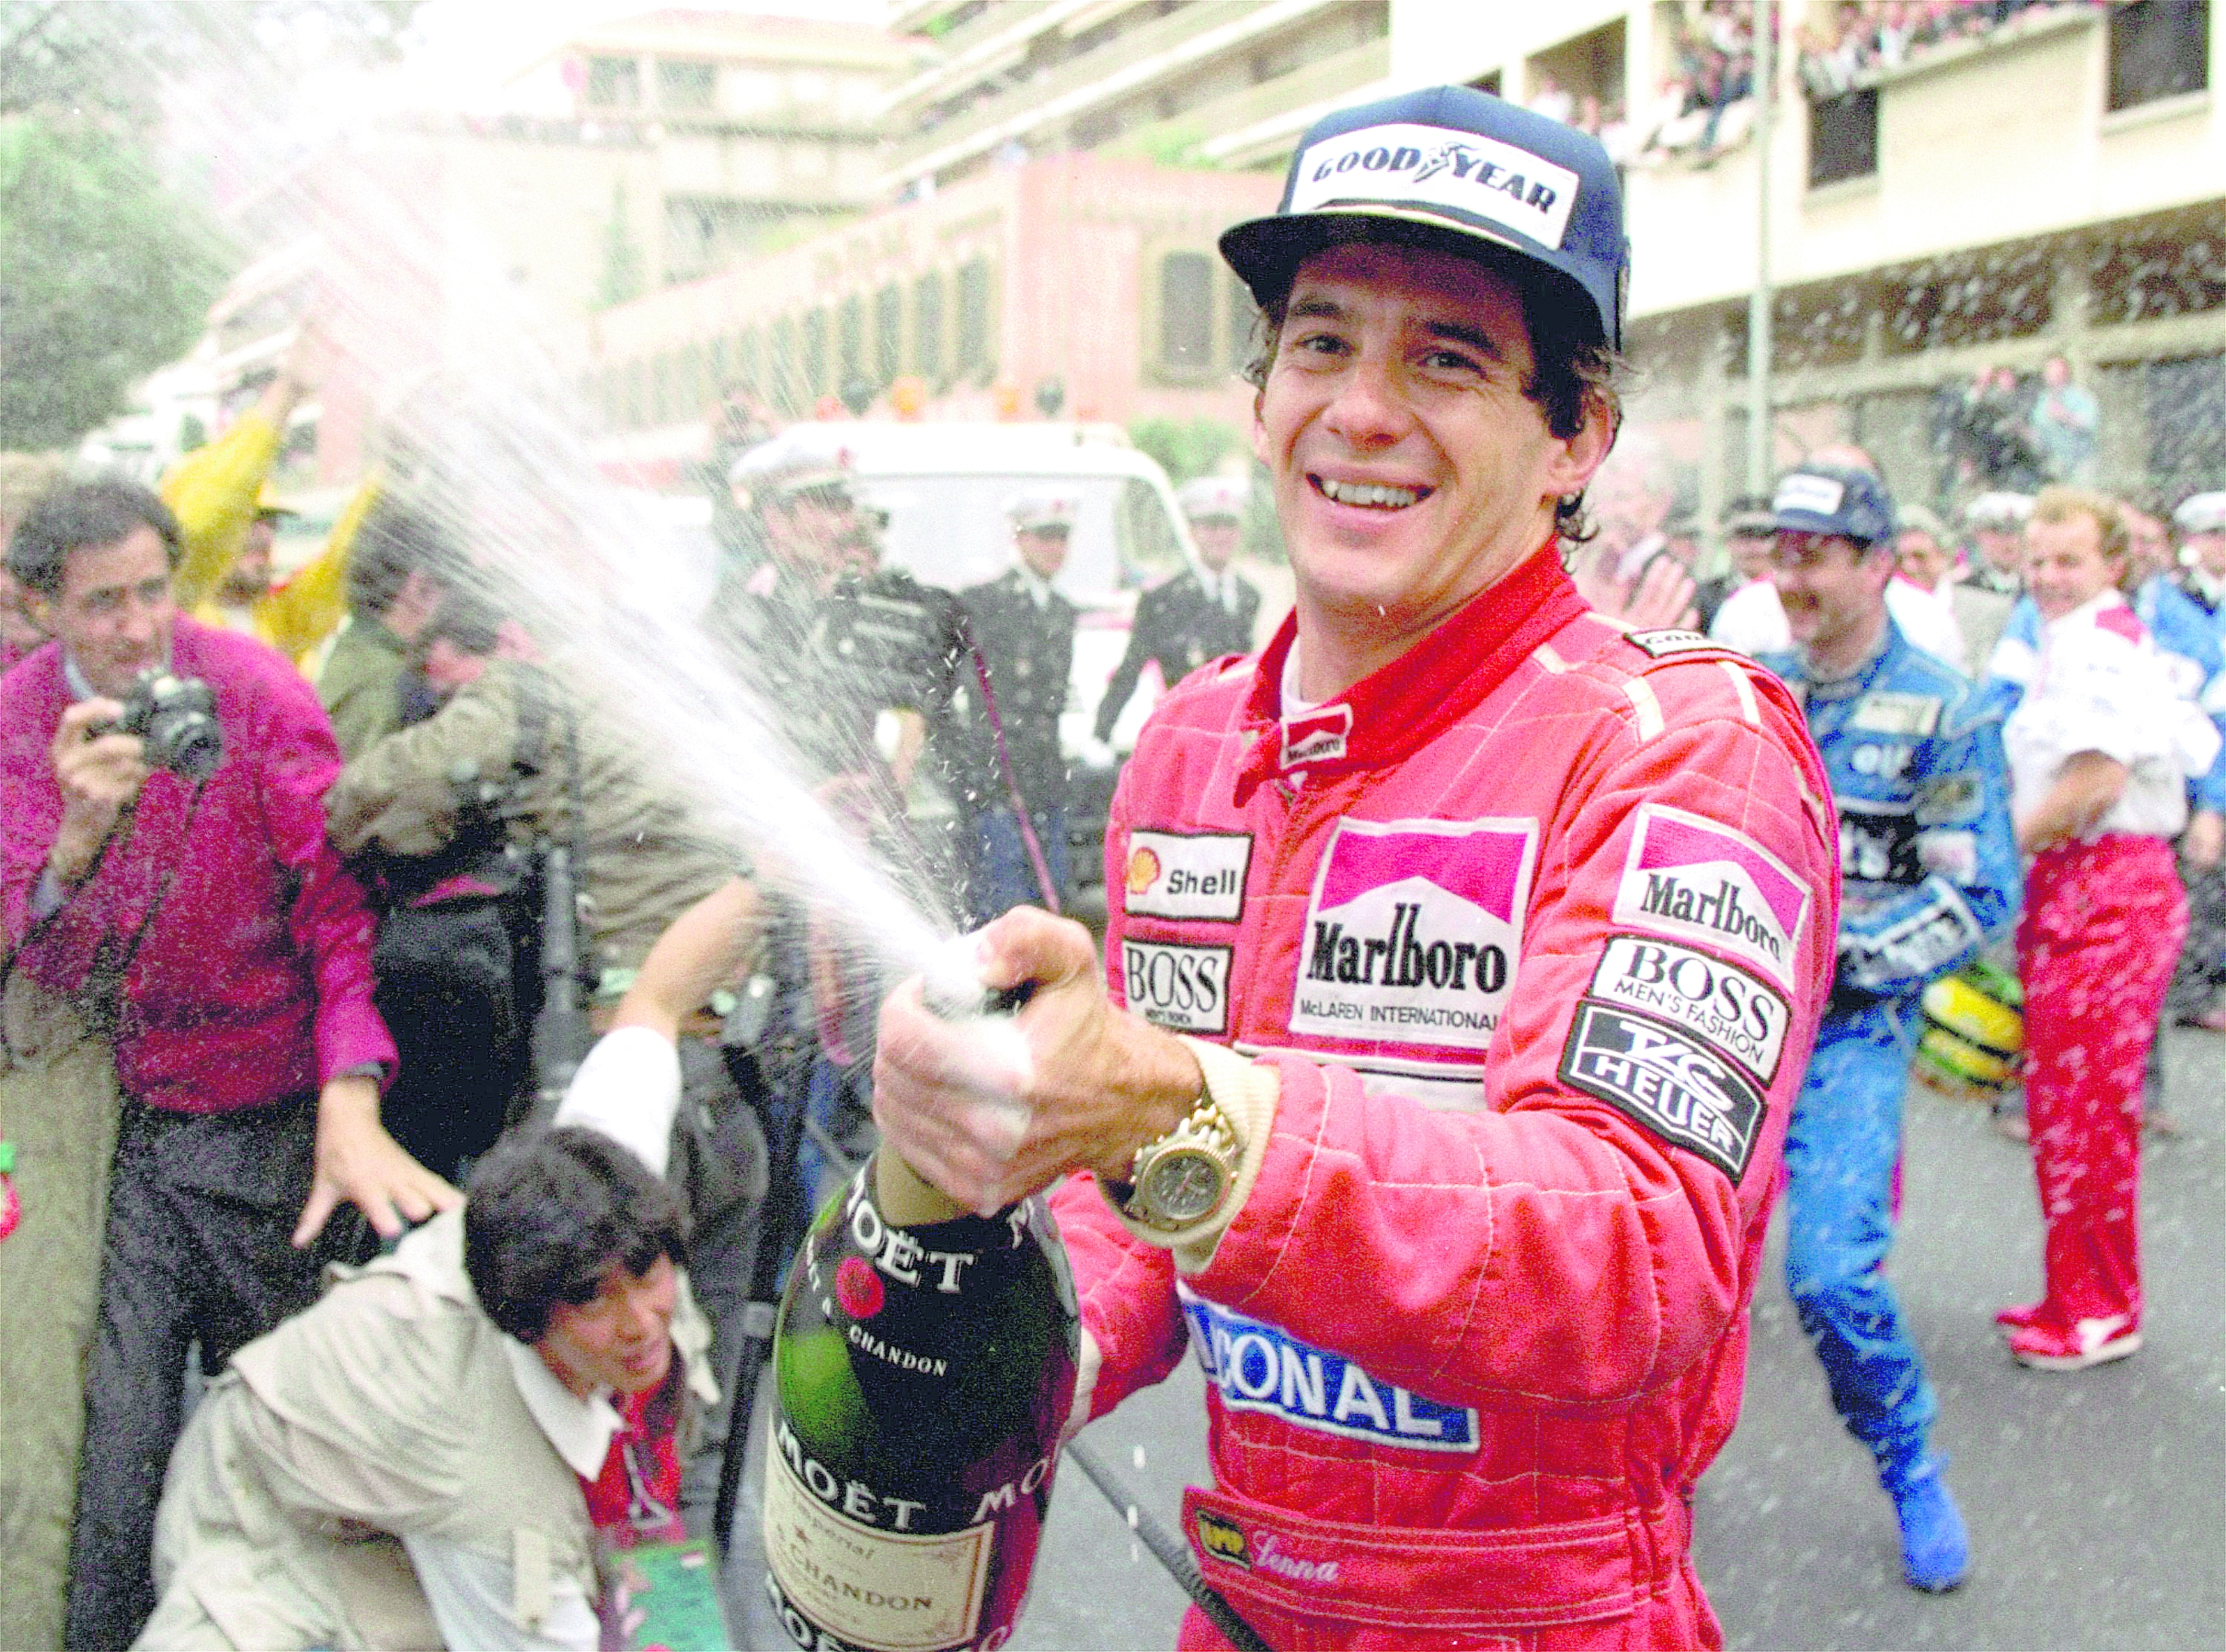 25 años sin Ayrton Senna (III). Polémico hasta el final